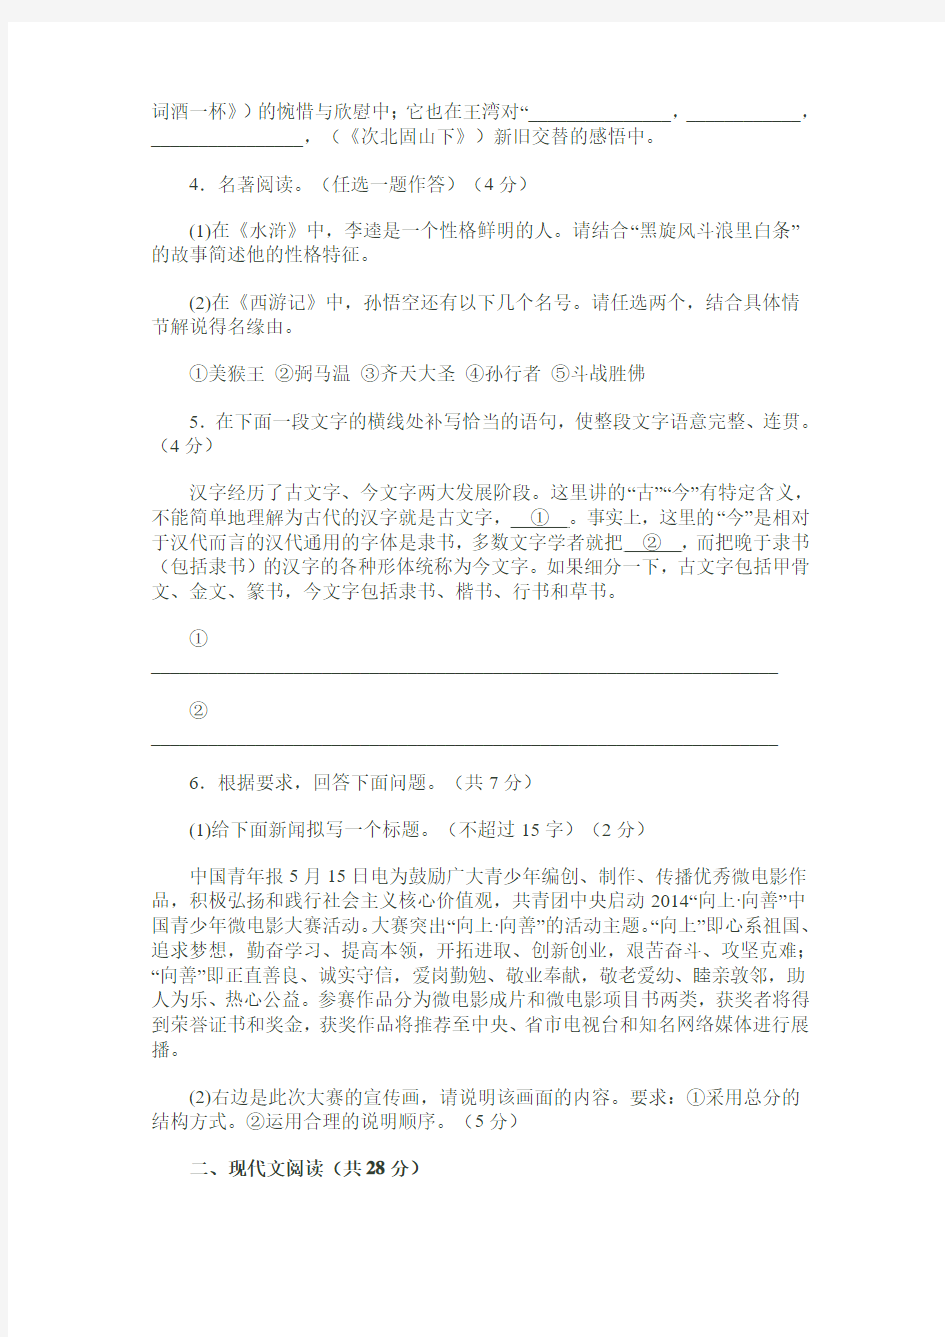 2014年河南省普通高中招生考试试卷及答案